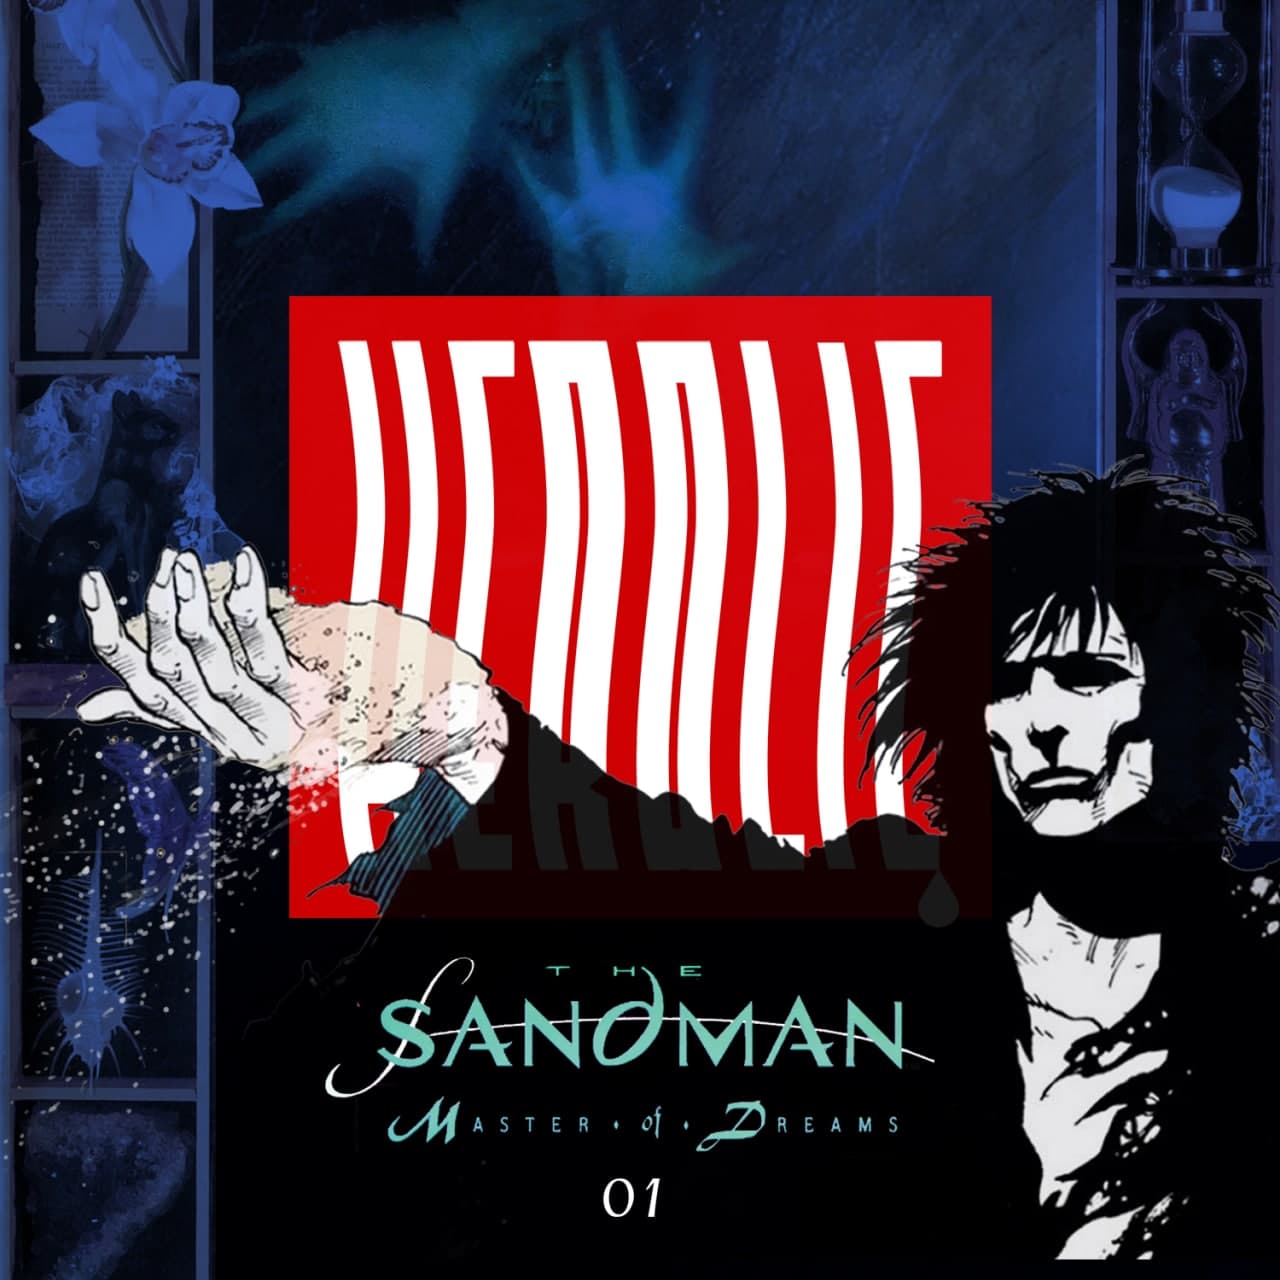 Herolic – E16 – The Sandman - 01